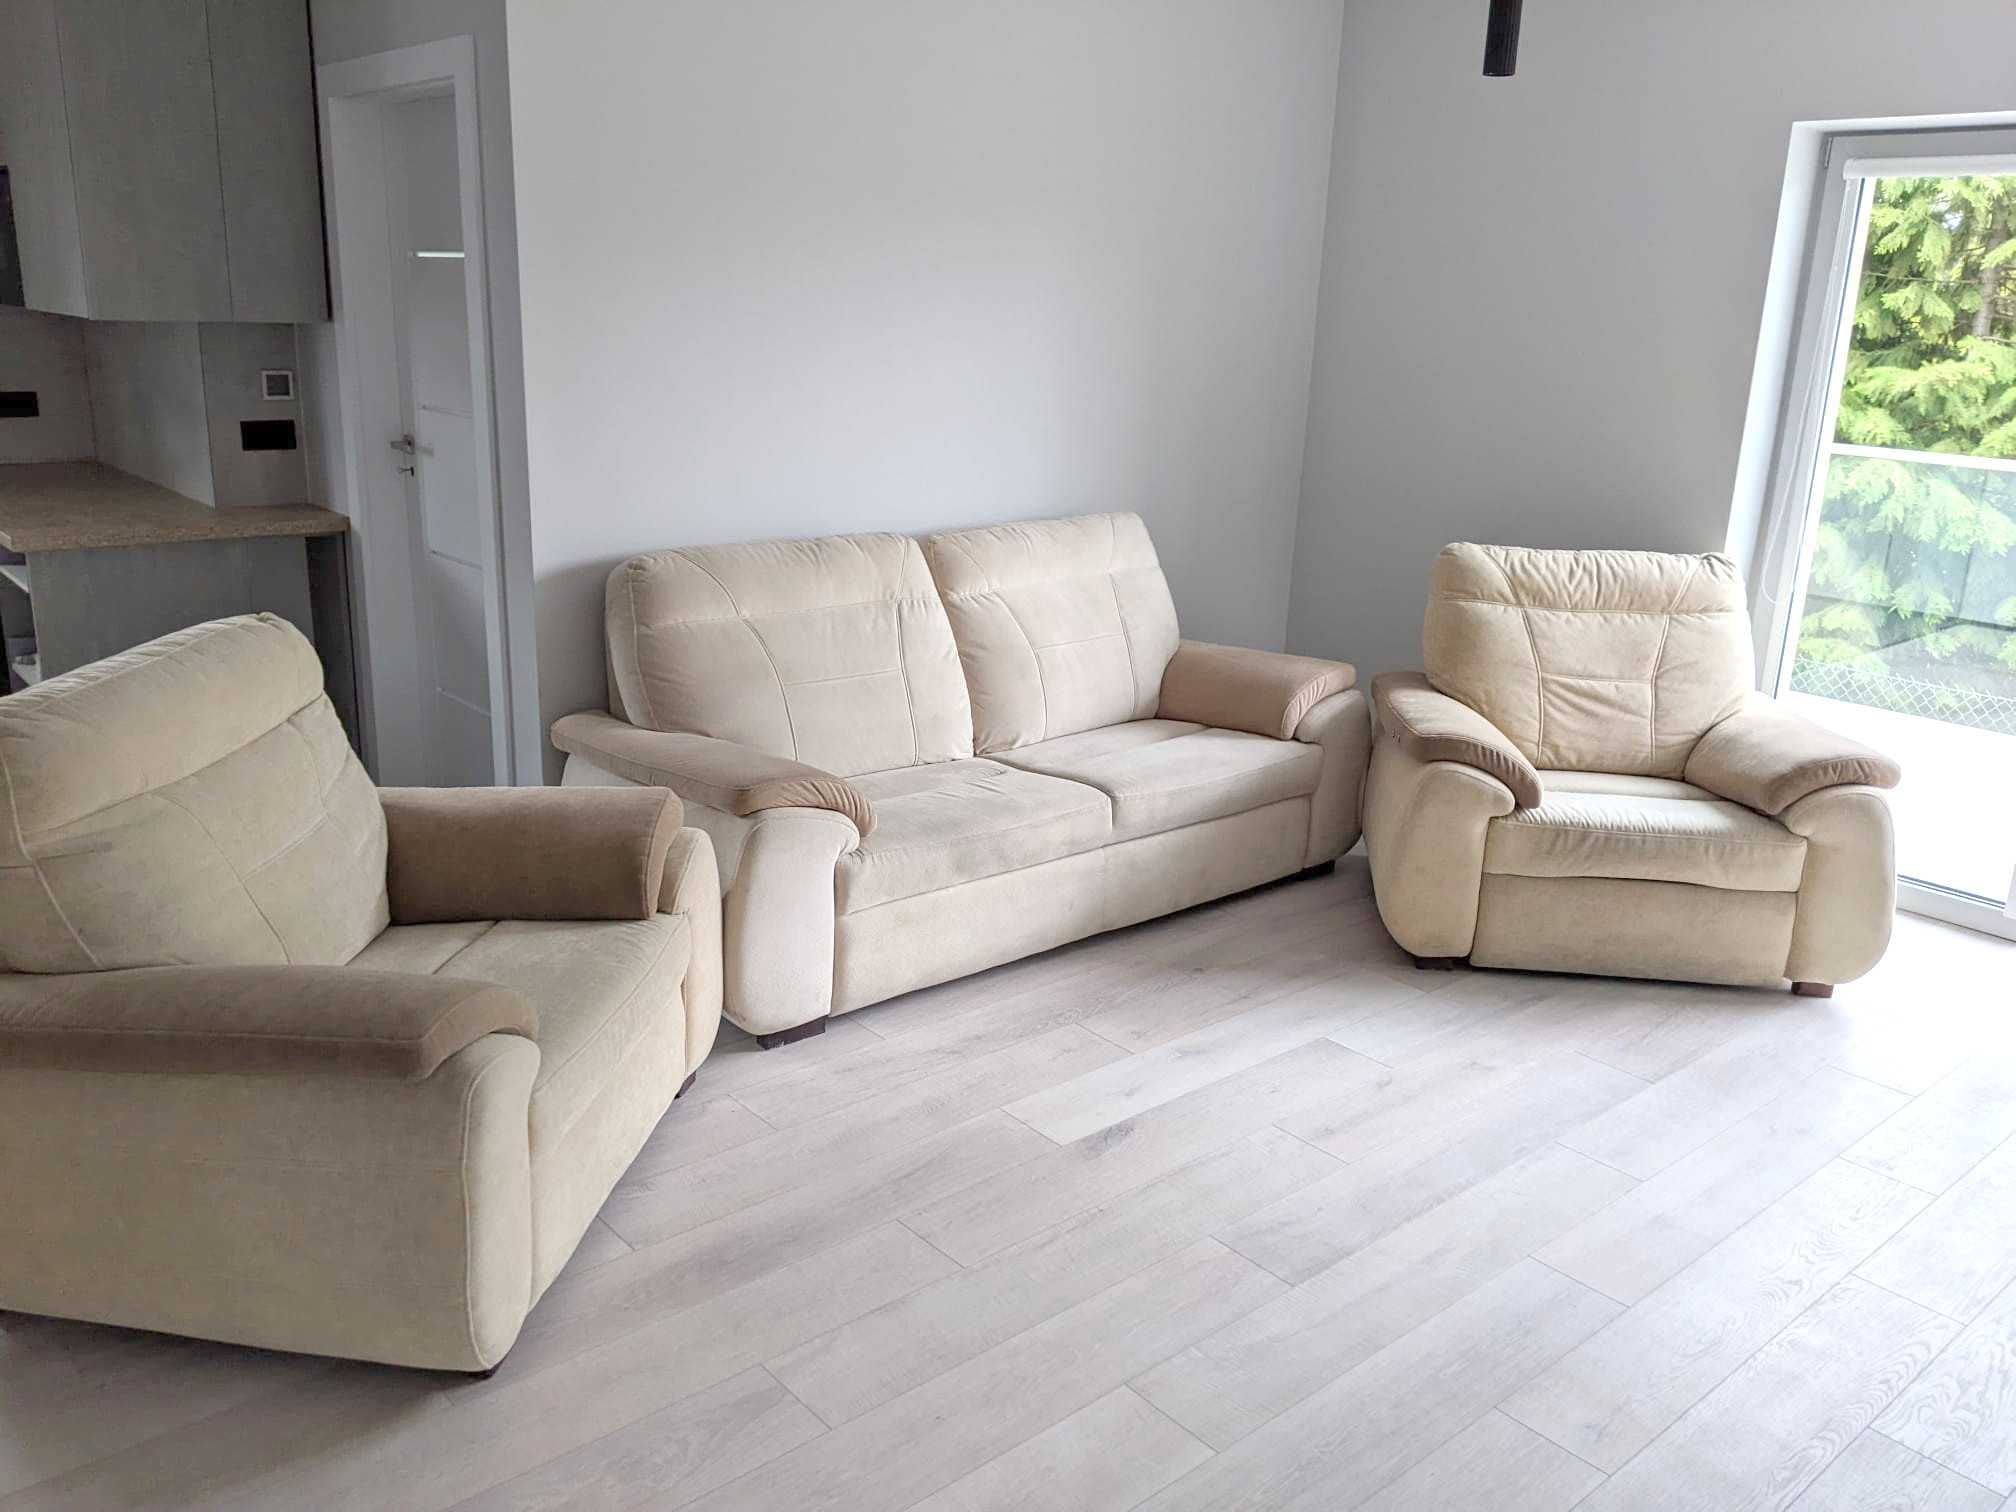 Zestaw wypoczynkowy - sofa + fotel + rozkładany fotel + gratis ława